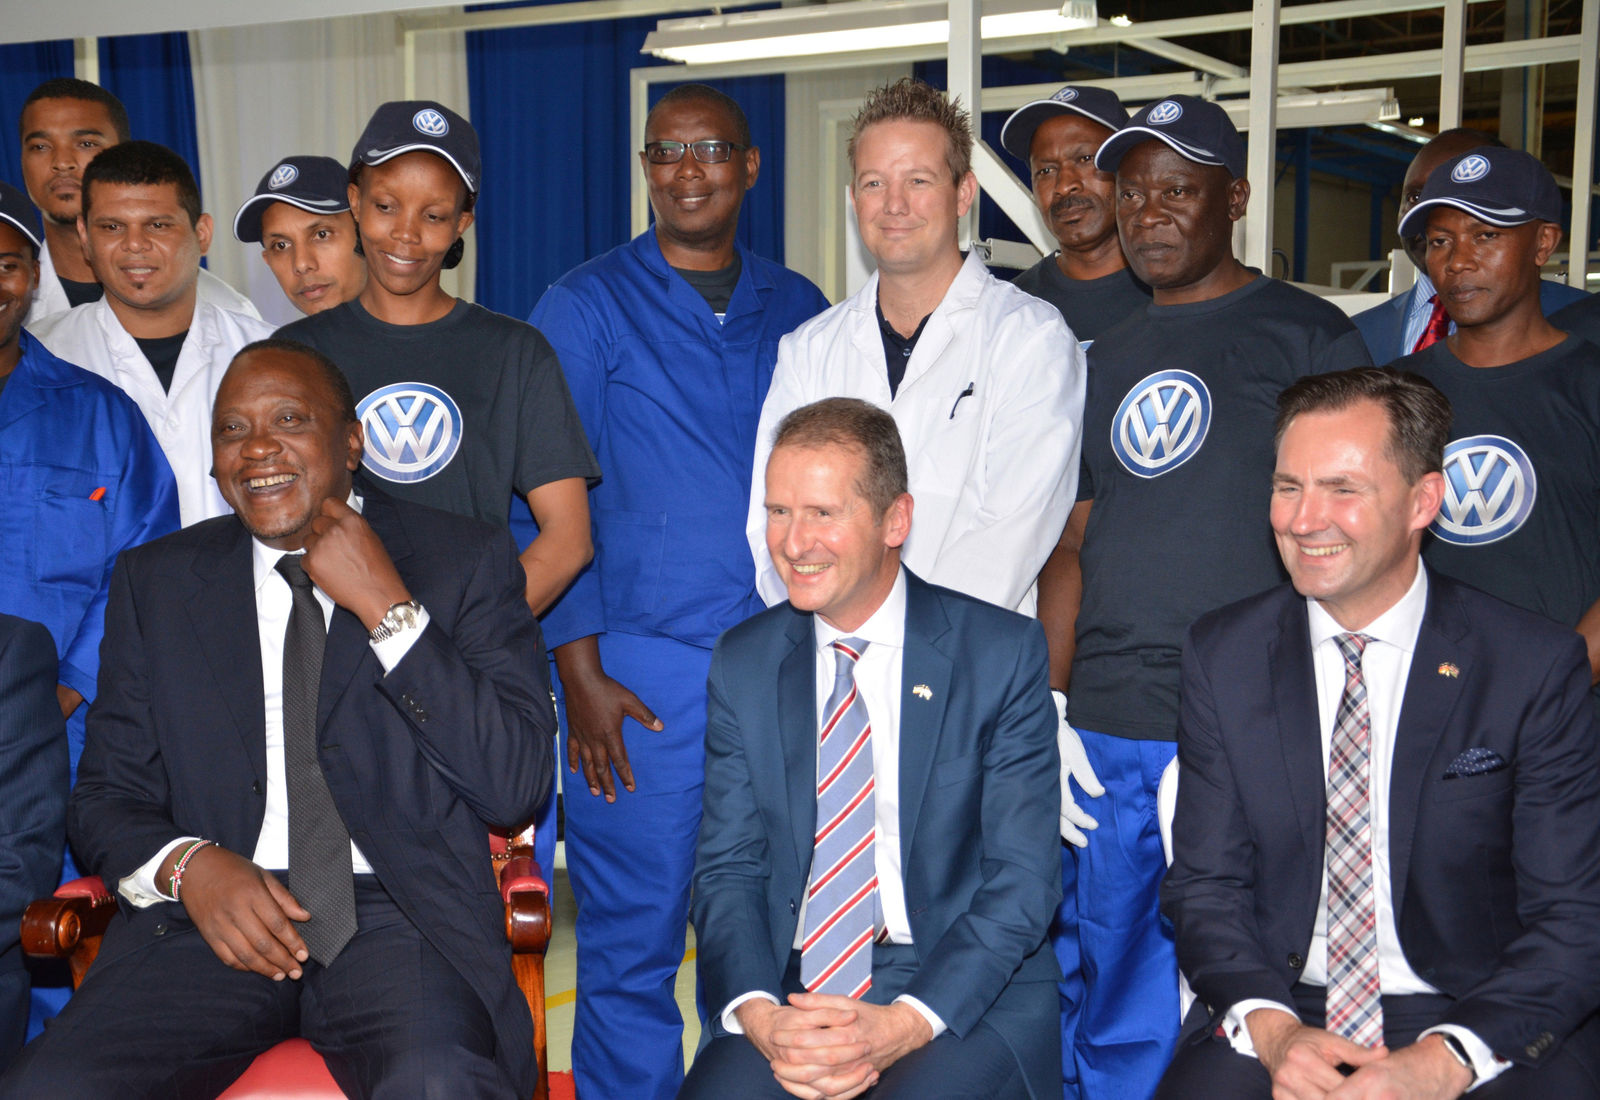 Erschließung neuer Marktpotentiale: Volkswagen eröffnet Fahrzeugfertigung in Kenia